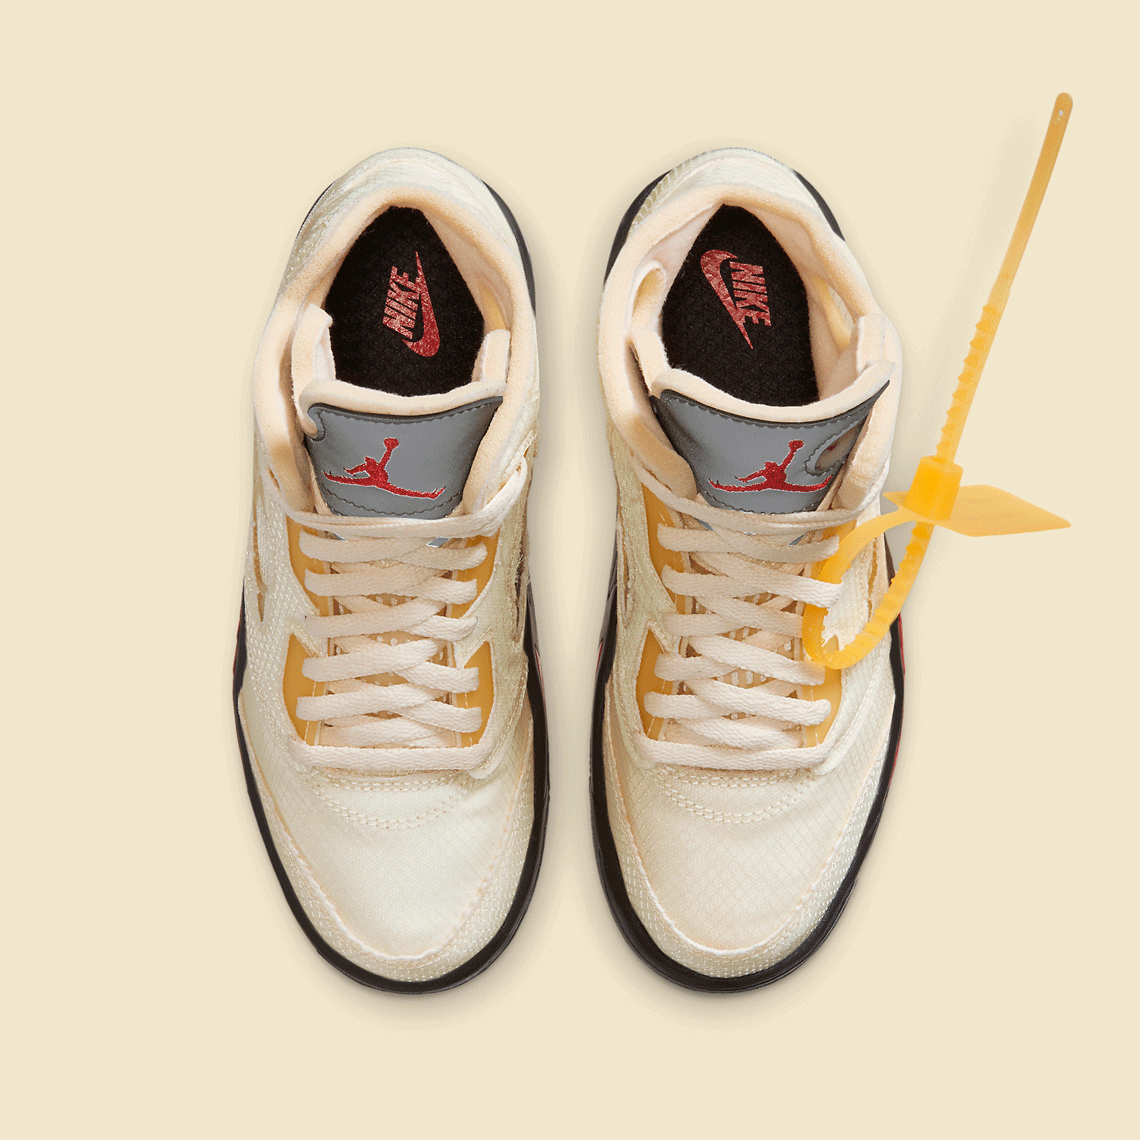 DEADSTOCK VIRGIL ABLOH Nike Air Jordan V 5 x OFF-WHITE Sail 2020